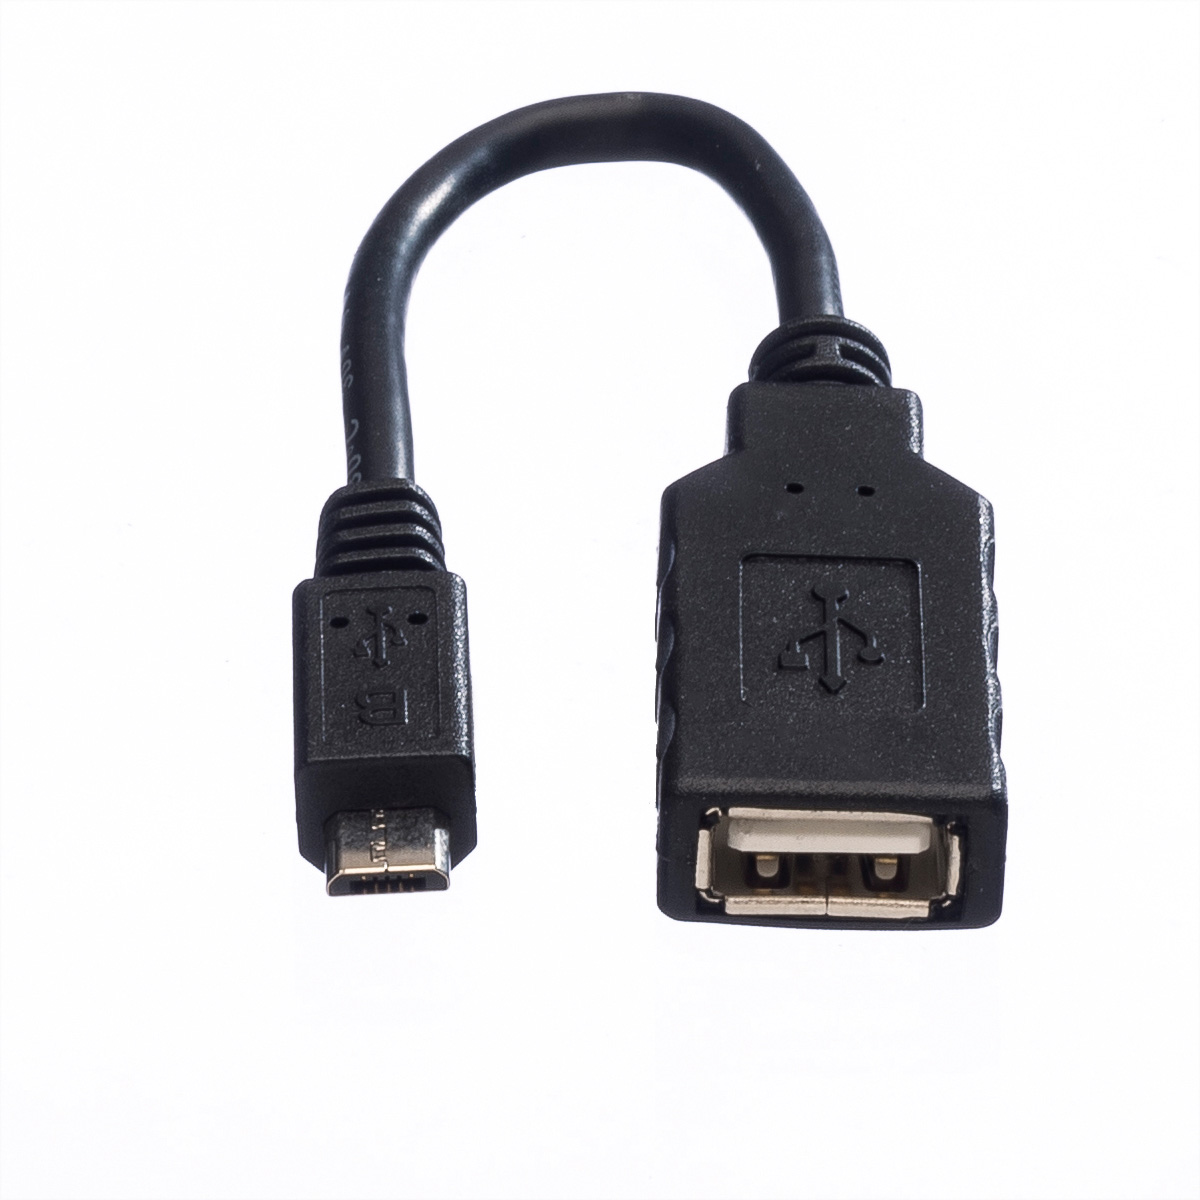 Typ Typ ROLINE B Micro USB USB Kabel A OTG 2.0 2.0 2.0 BU, - USB Kabel, Micro